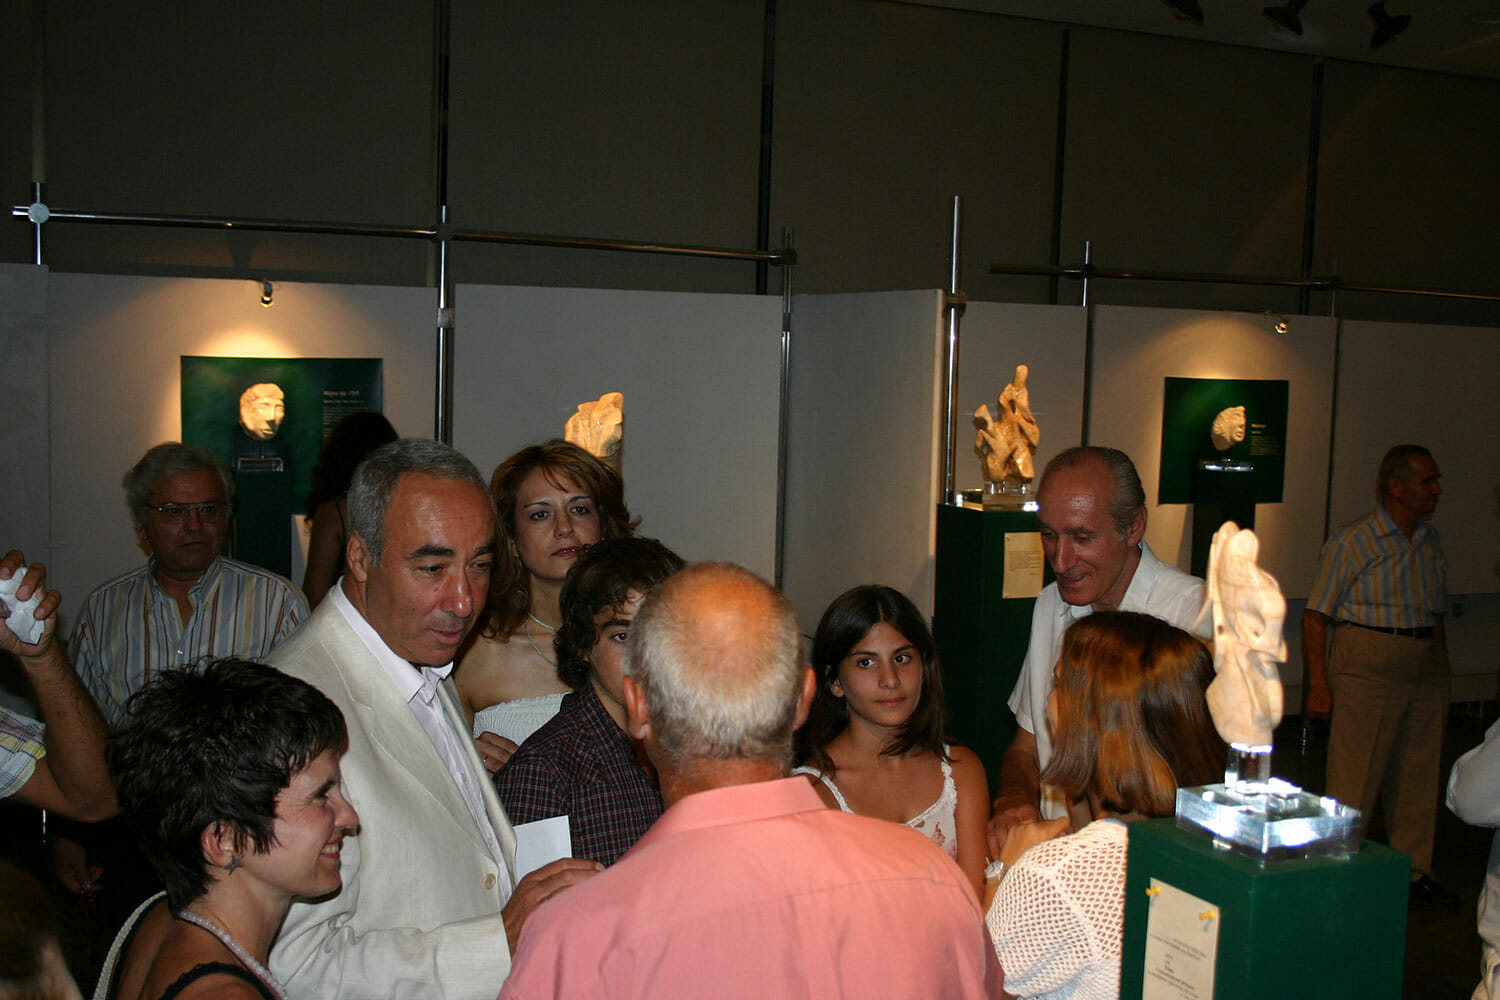 Χίος 2006, Ομήρειο Πνευματικό Κέντρο.-Έκθεση 'Πηγυλίδες και Ρυάδες